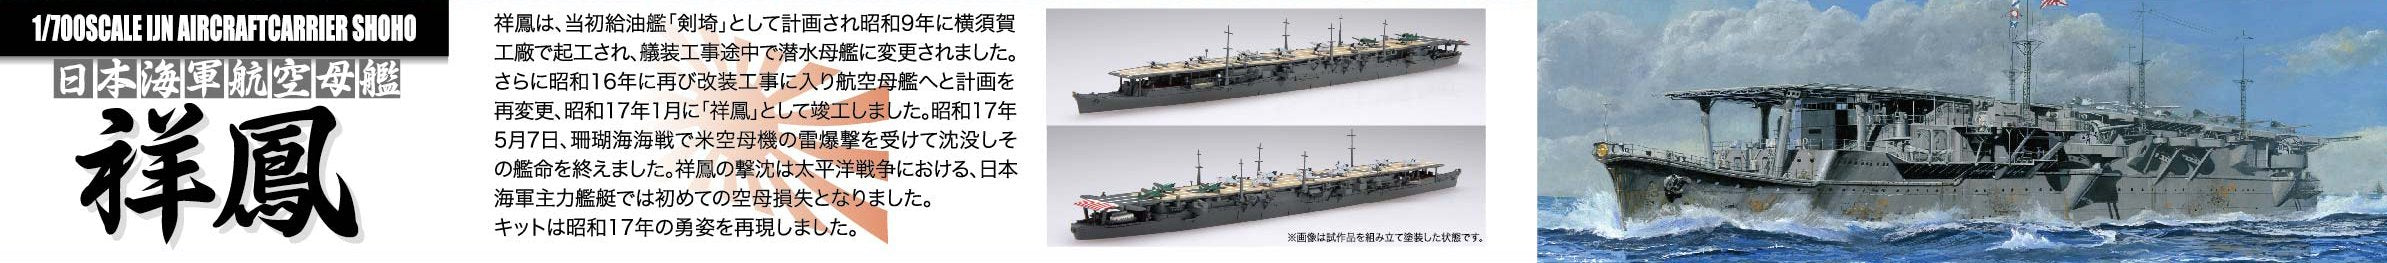 Fujimi modèle 1/700 série spéciale n°88 porte-avions de la marine japonaise Shoho Showa 17 modèle en plastique spécial 88